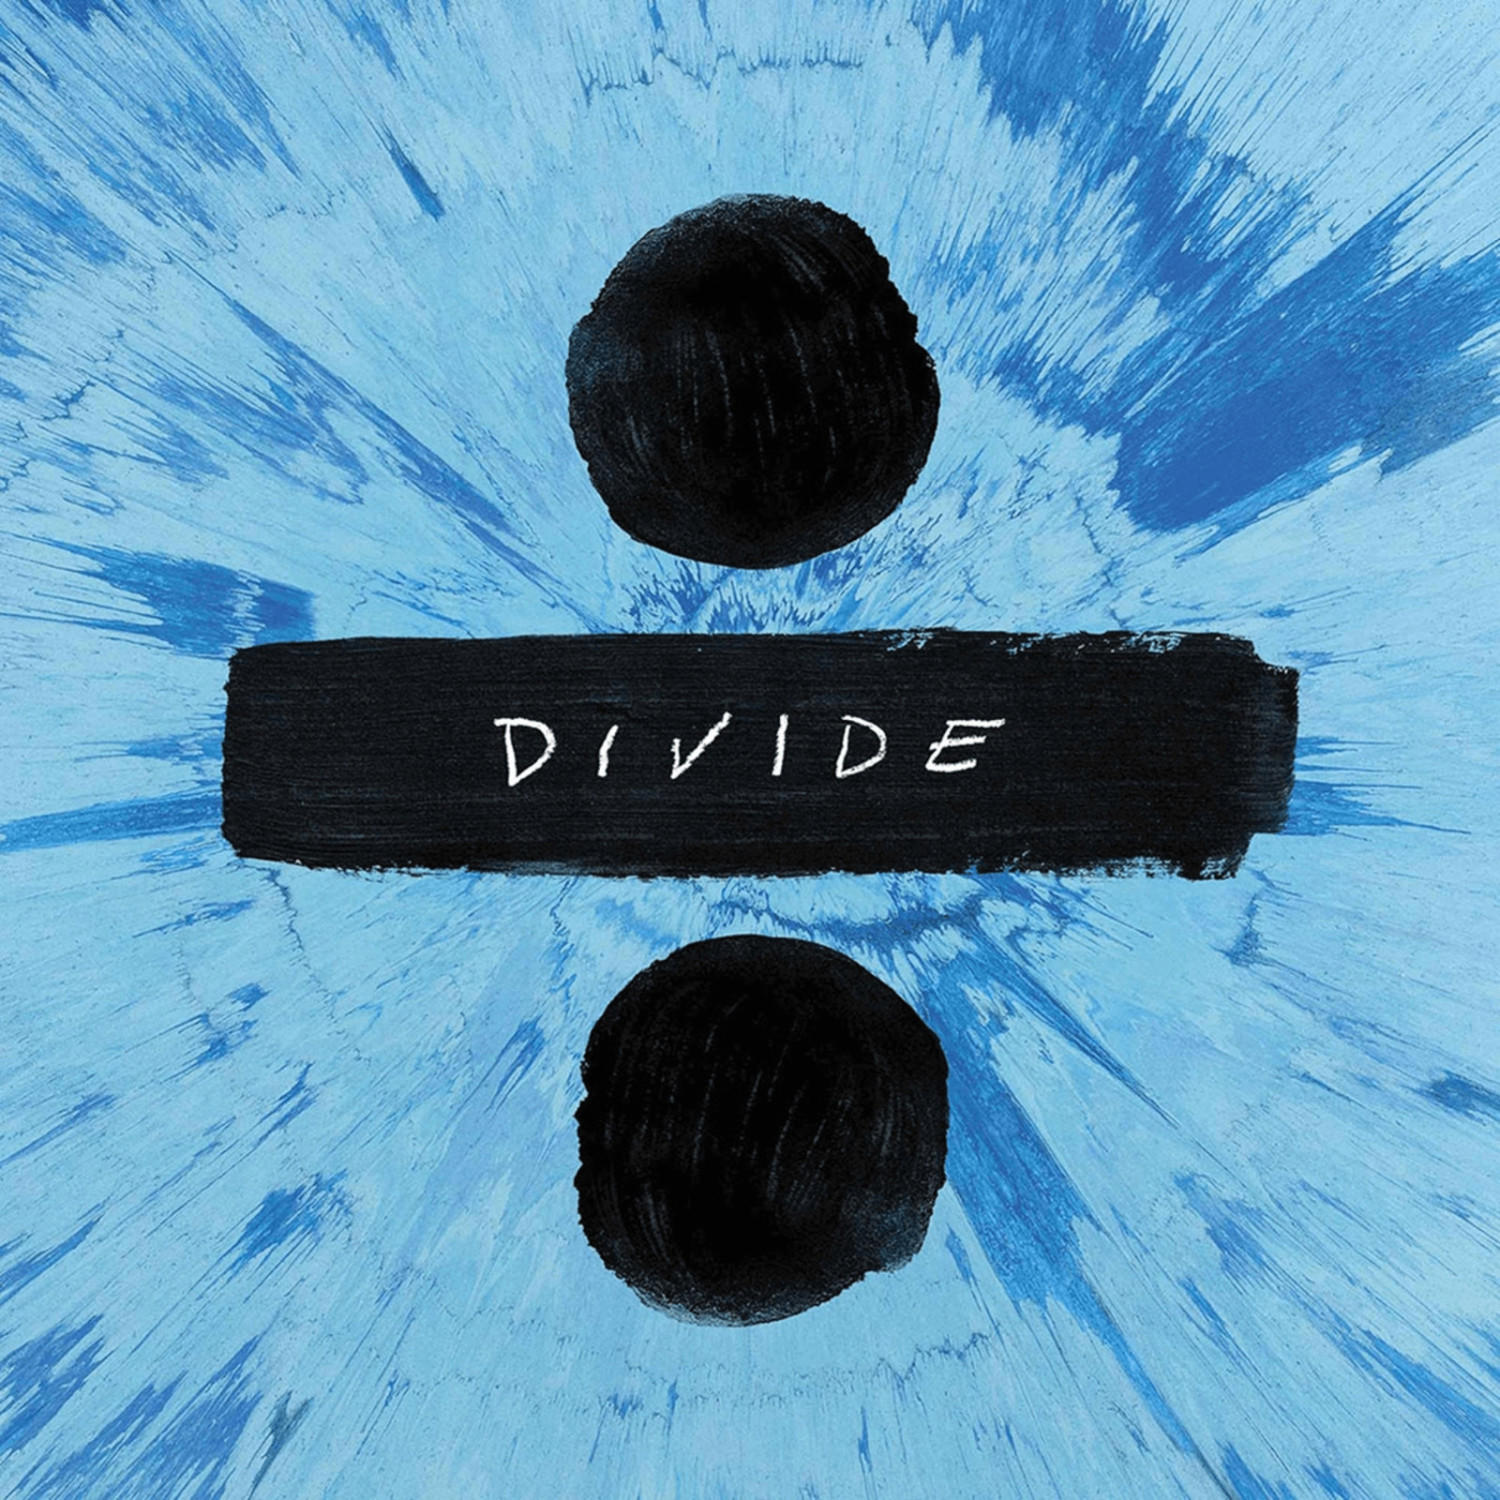 Ed Sheeran - Divide (Deluxe Edition)